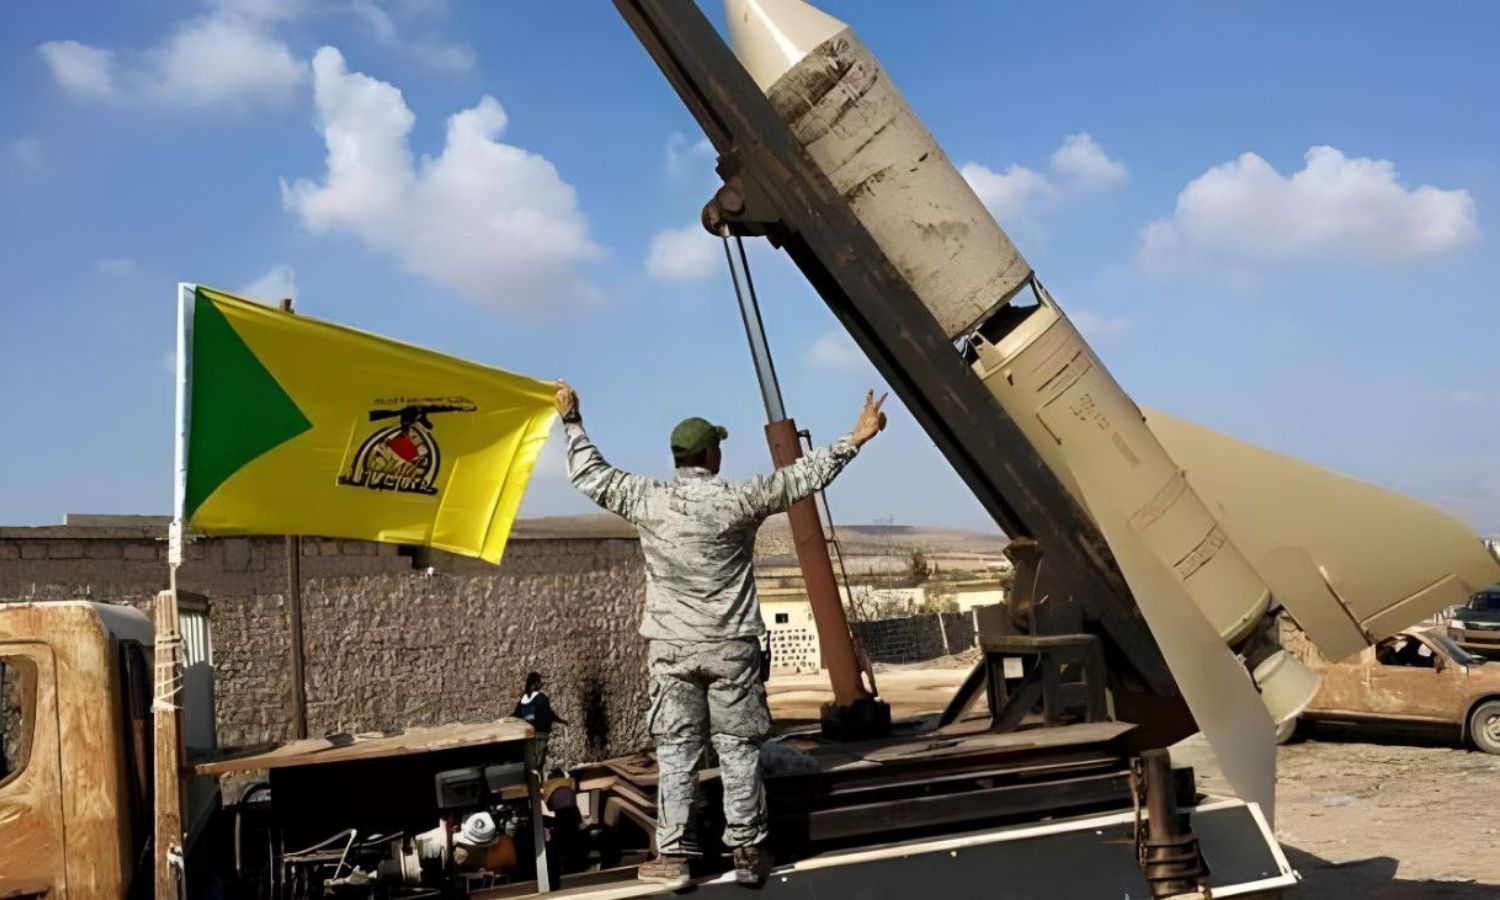 مقاتل بجانب منصة إطلاق صواريخ يرفع علم كتائب حزب الله العراقية (الموقع الرسمي لكتائب حزب الله)